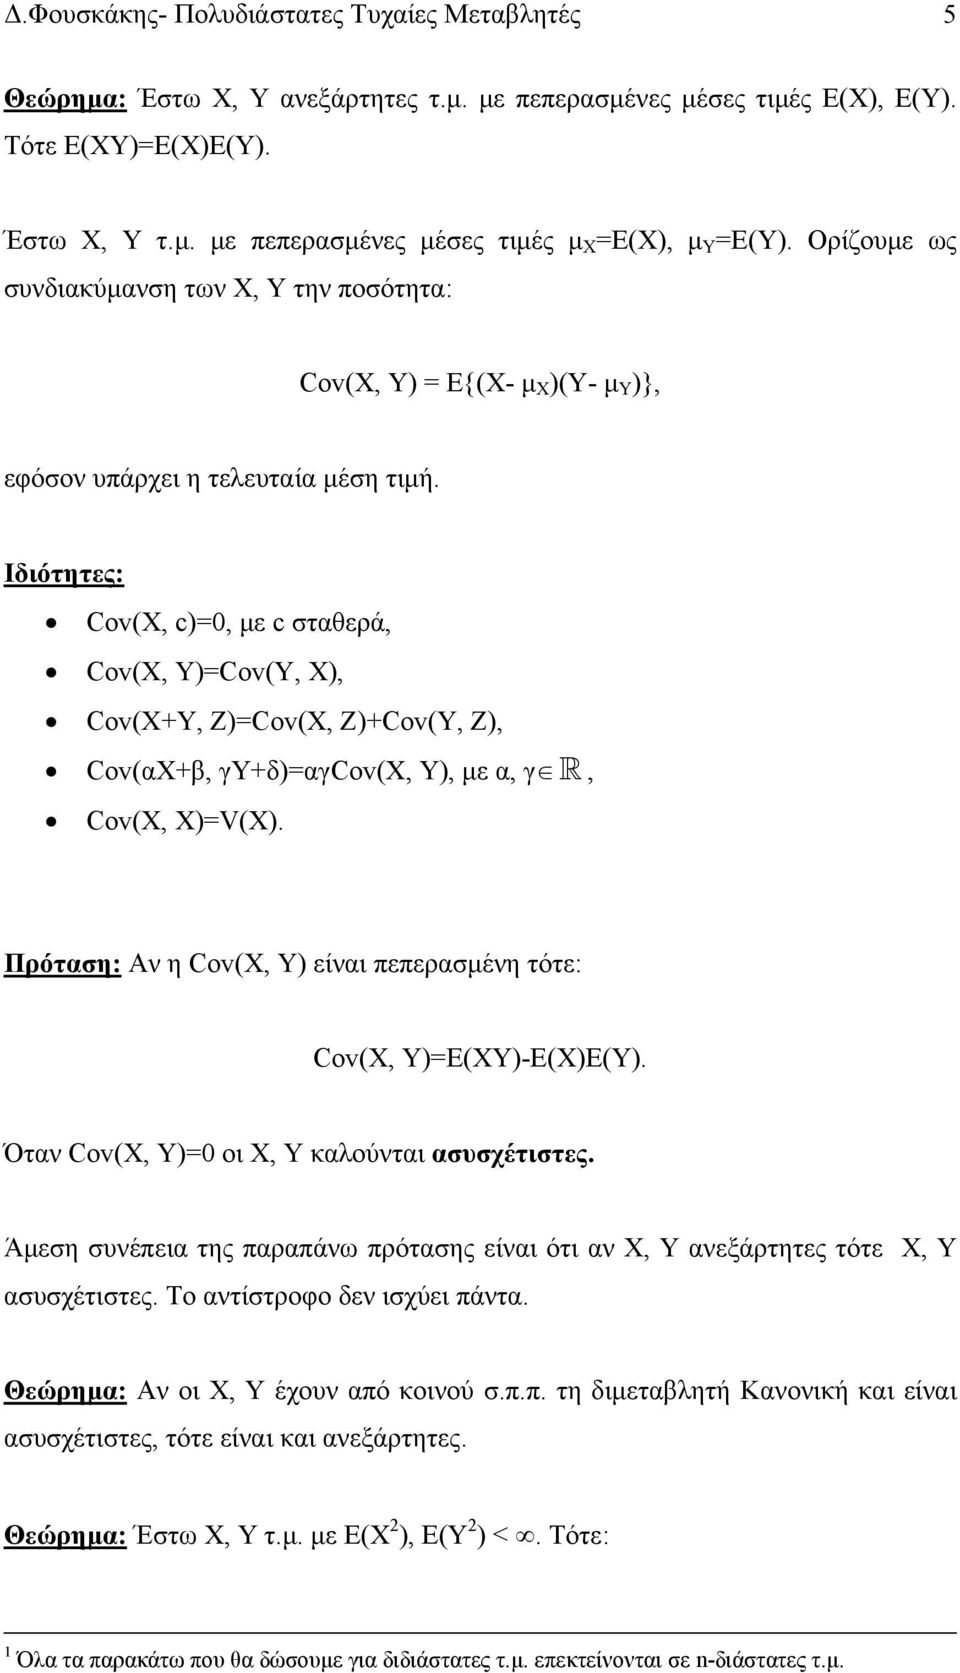 Ιδιότητες: Cov(X, c)=0, με c σταθερά, Cov(X, Y)=Cov(Y, X), Cov(X+Y, Z)=Cov(X, Z)+Cov(Y, Z), Cov(αΧ+β, γy+δ)=αγcov(x, Y), με α, γ, Cov(X, Χ)=V(X).